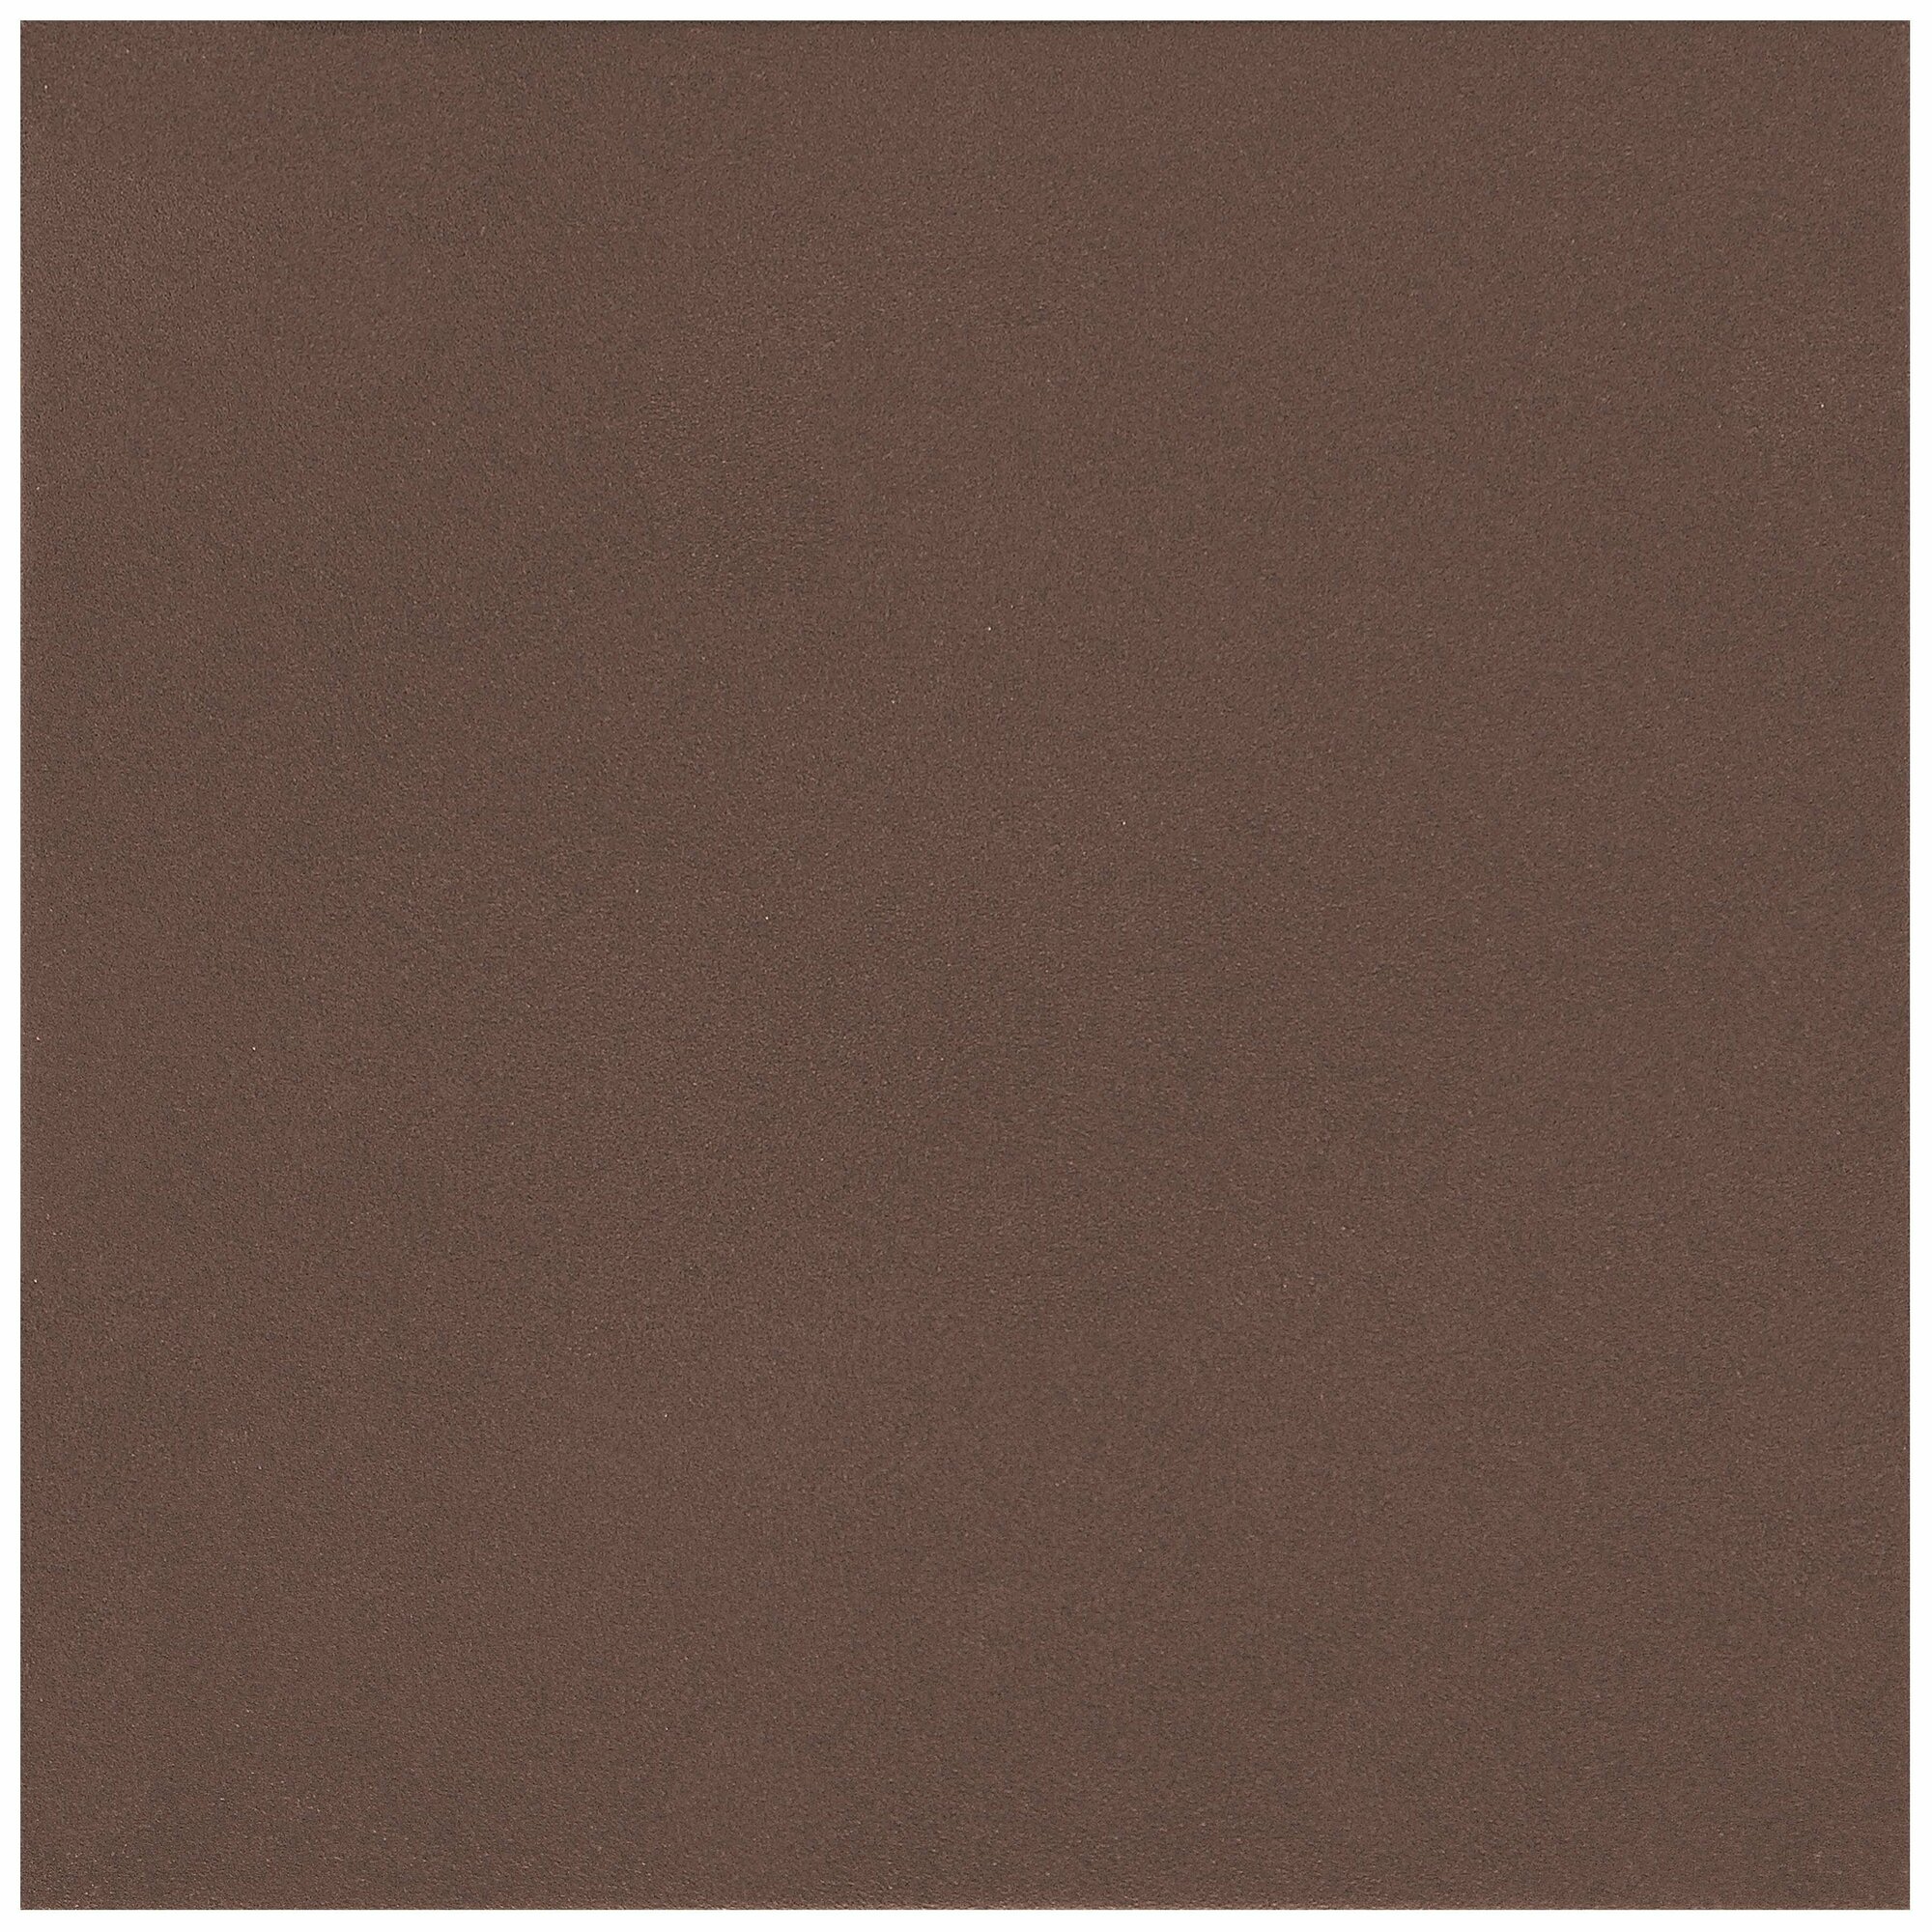 Керамическая плитка Керамин Амстердам камень коричневая 29,8х29,8 см